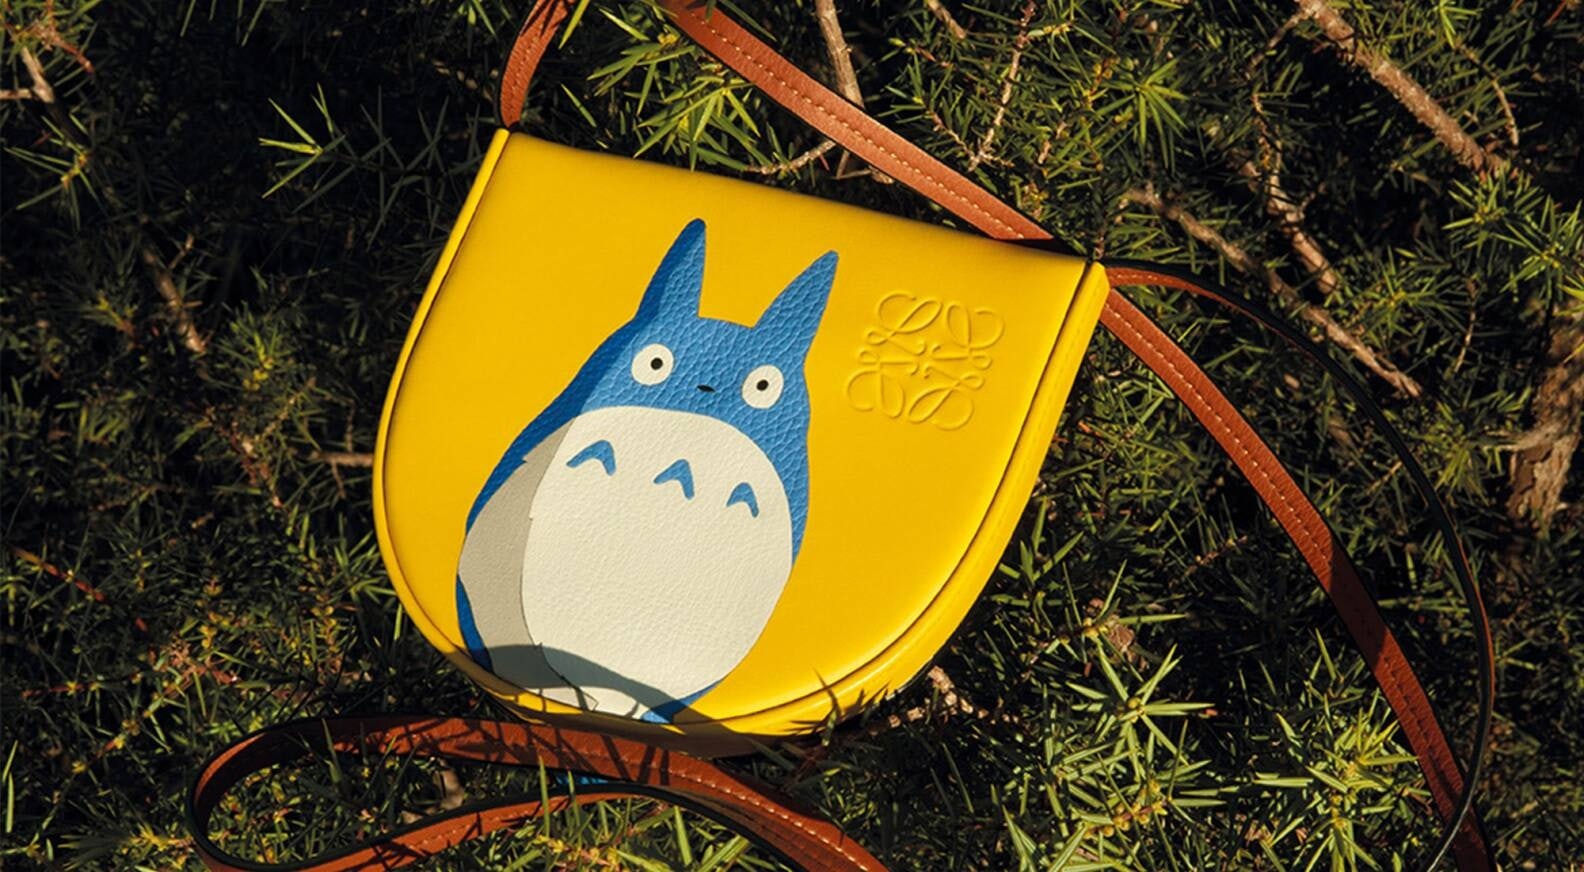 Loewe x My Neighbor Totoro collaboration. Image Courtesy Loewe